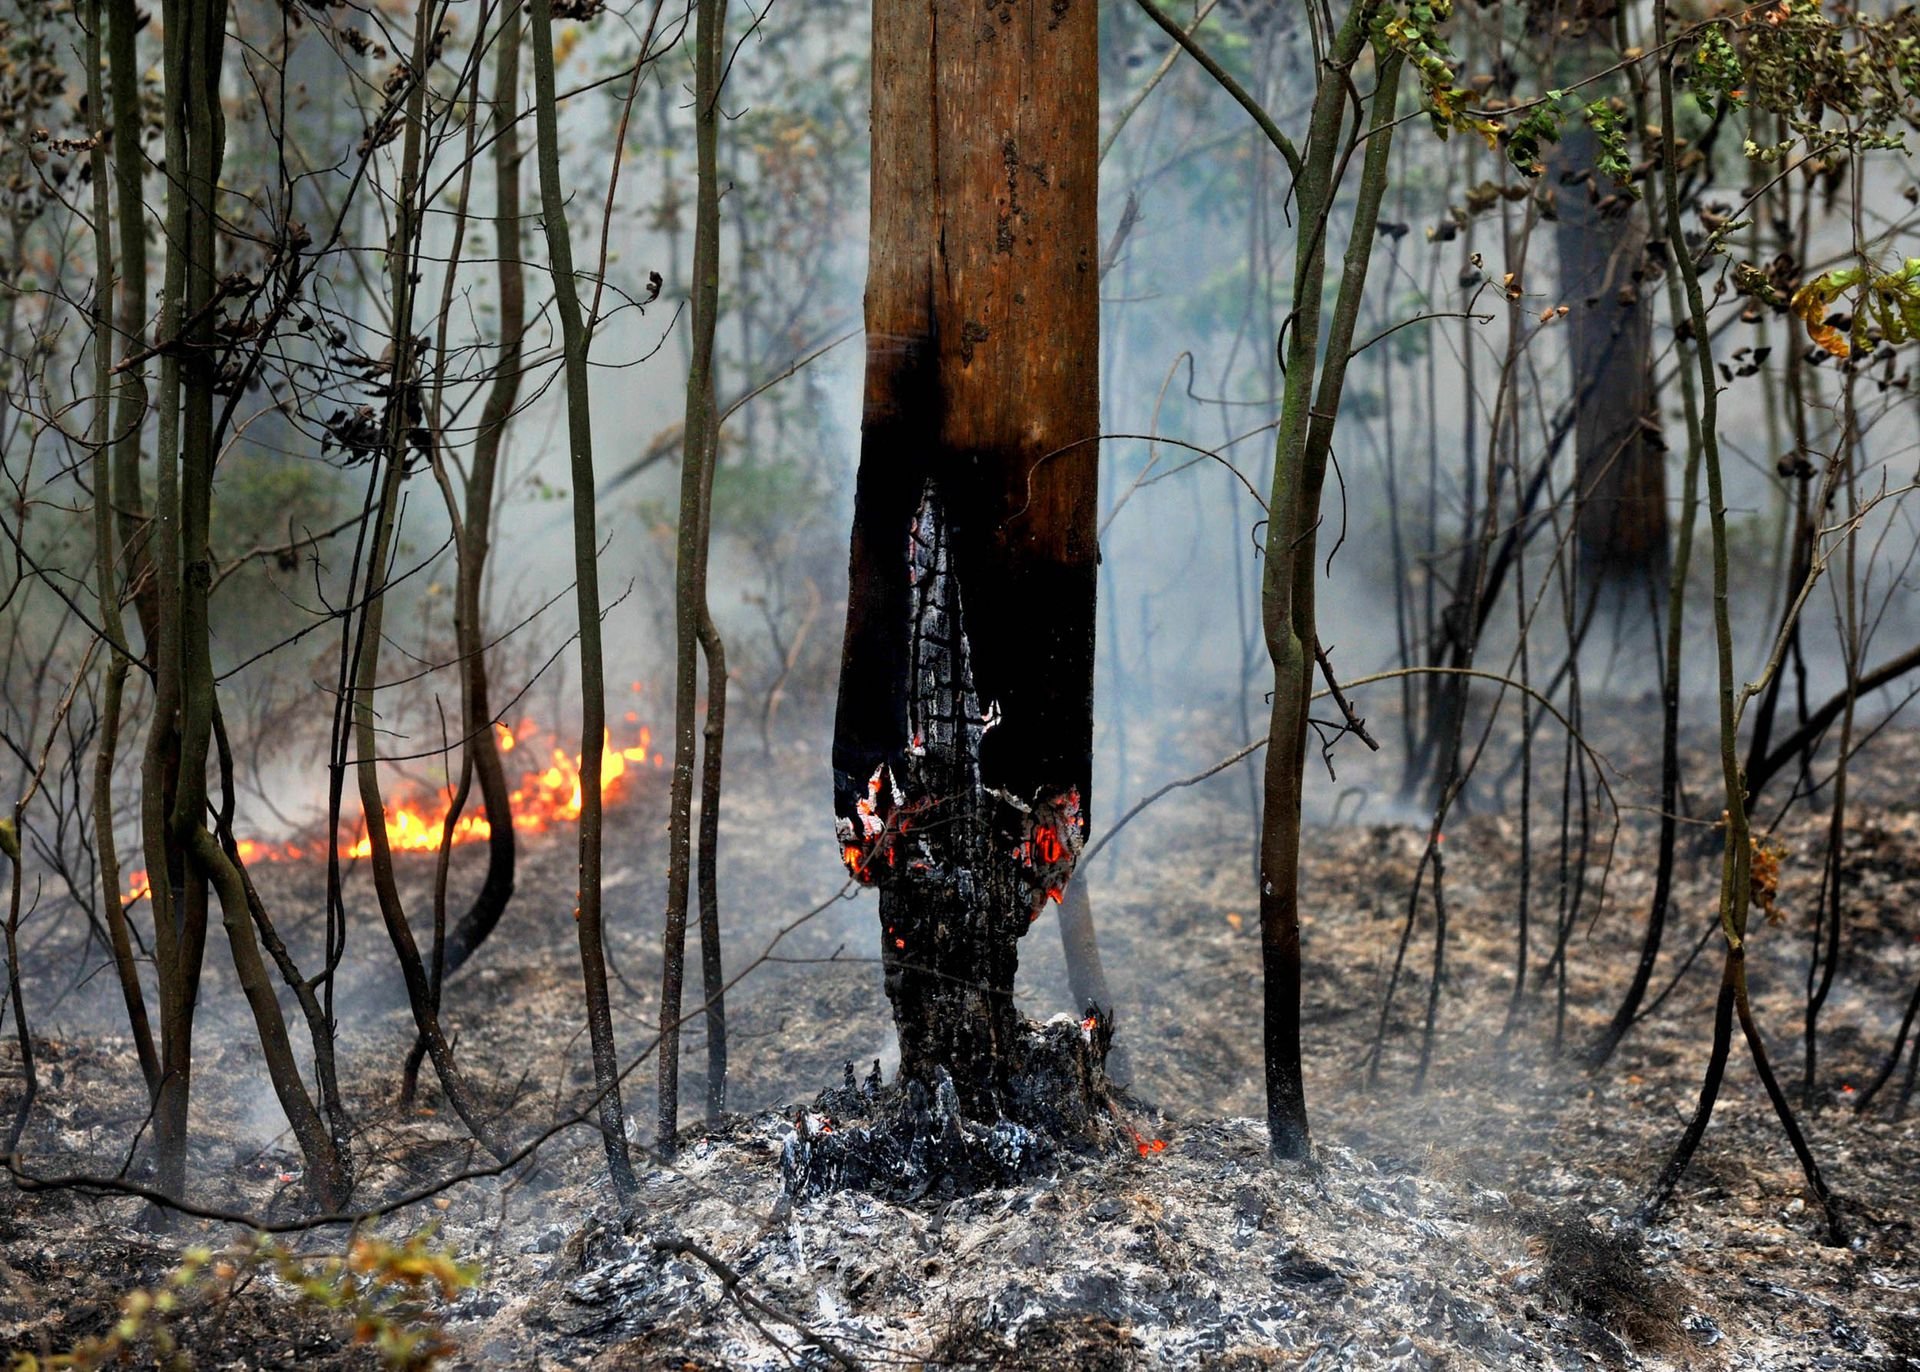 Зарастание пожарища. Деревья после пожара. Последствия пожара в лесу. Сгоревшее дерево. Лес после пожара.